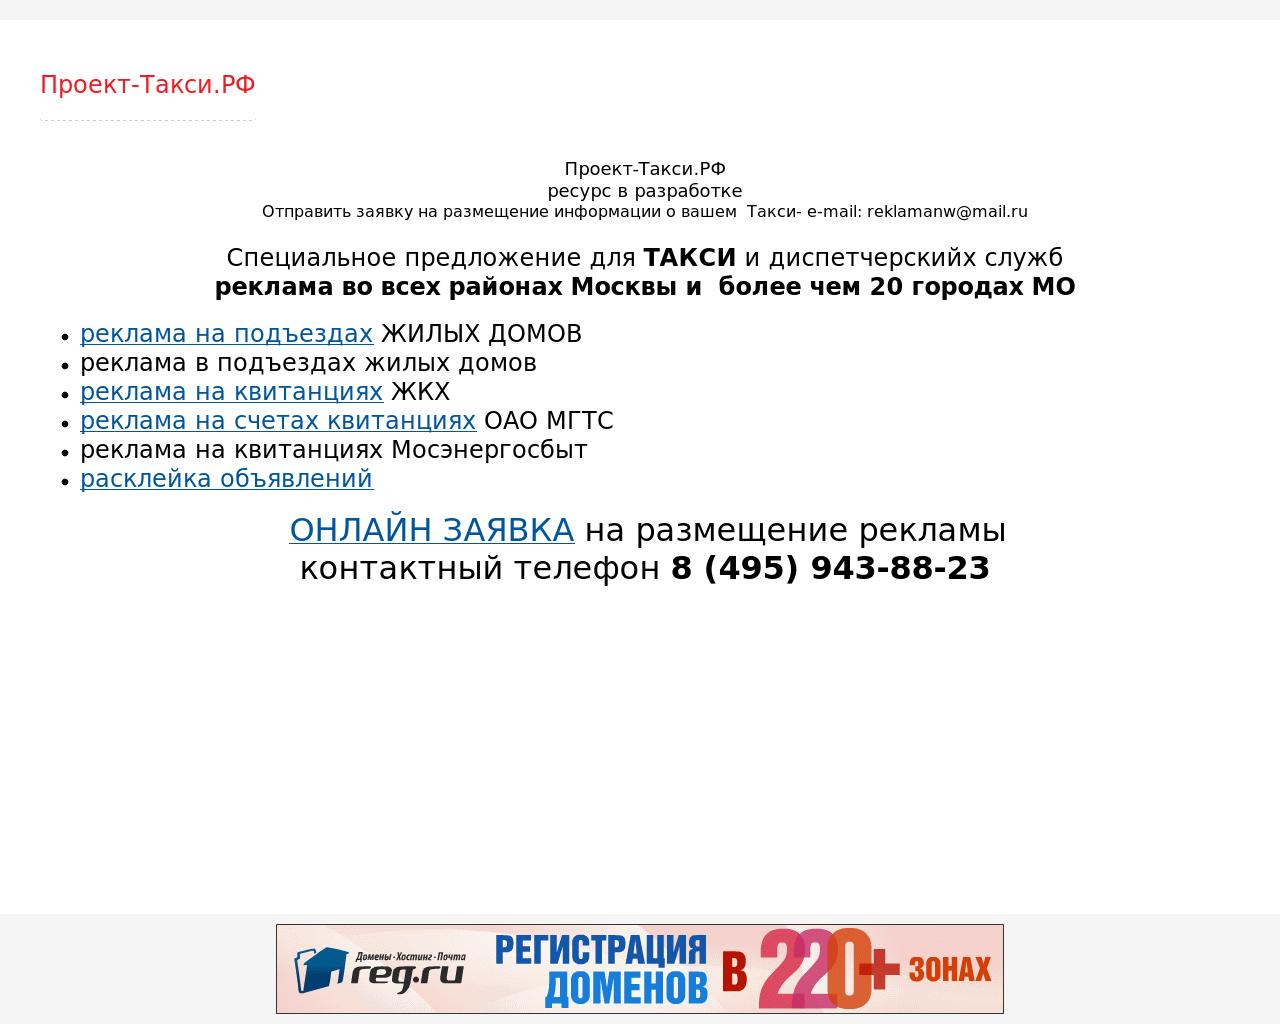 Изображение сайта проект-такси.рф в разрешении 1280x1024